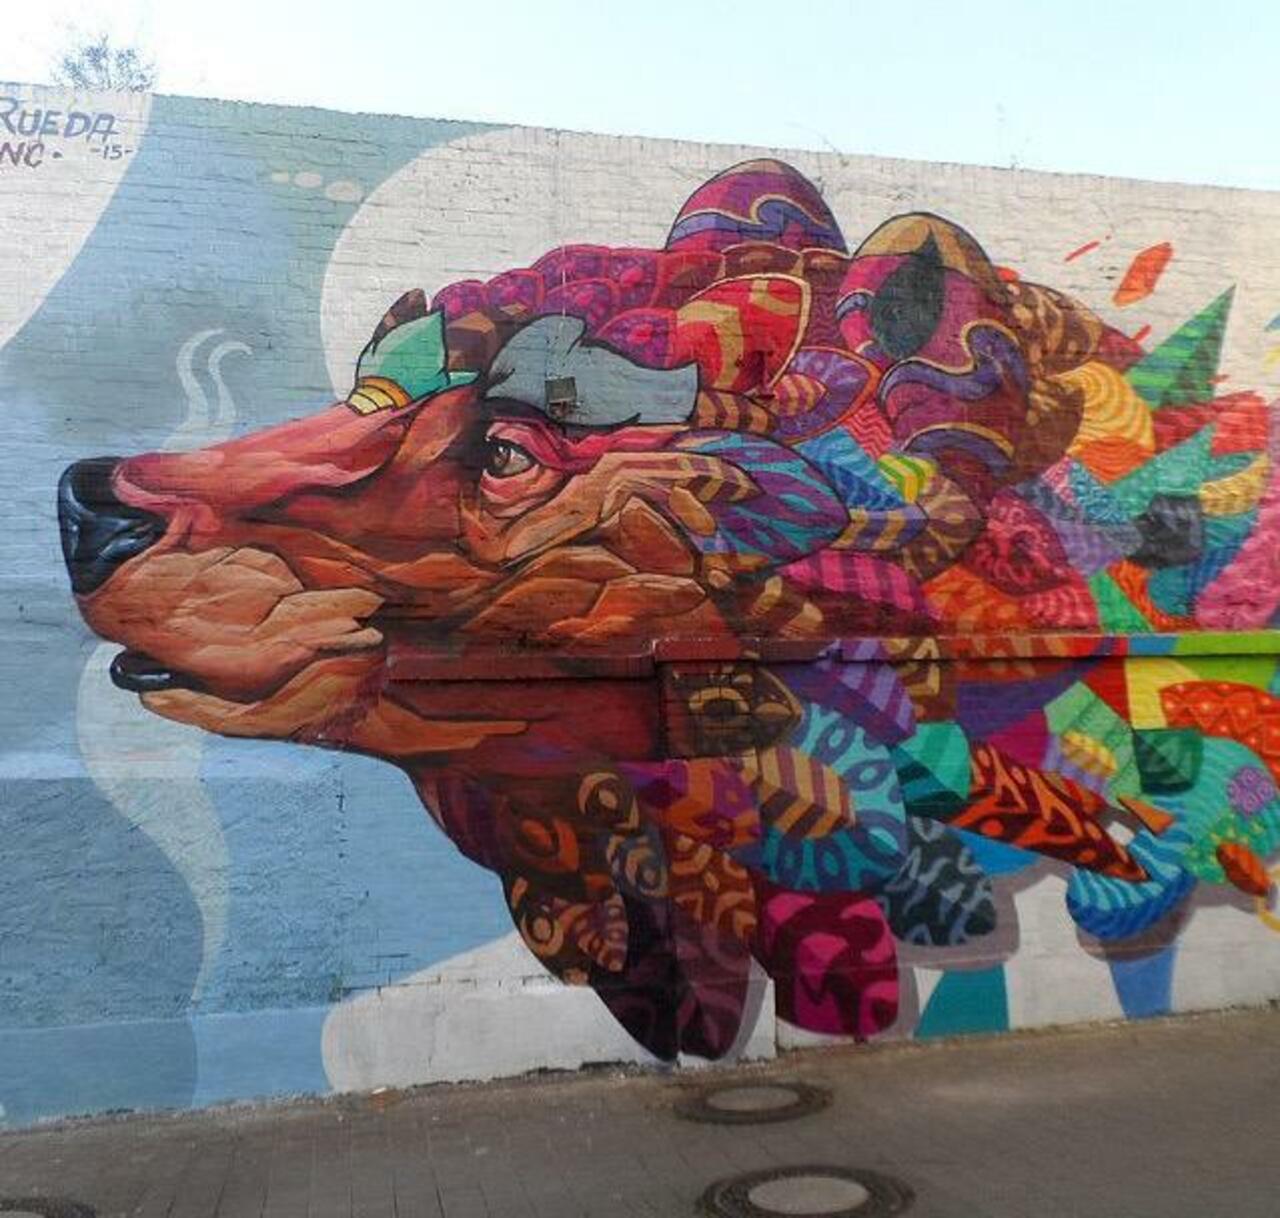 Farid Rueda
#art #graffiti #mural #streetart http://t.co/8Sej7ZUB9k
Via @GoogleStreetArt